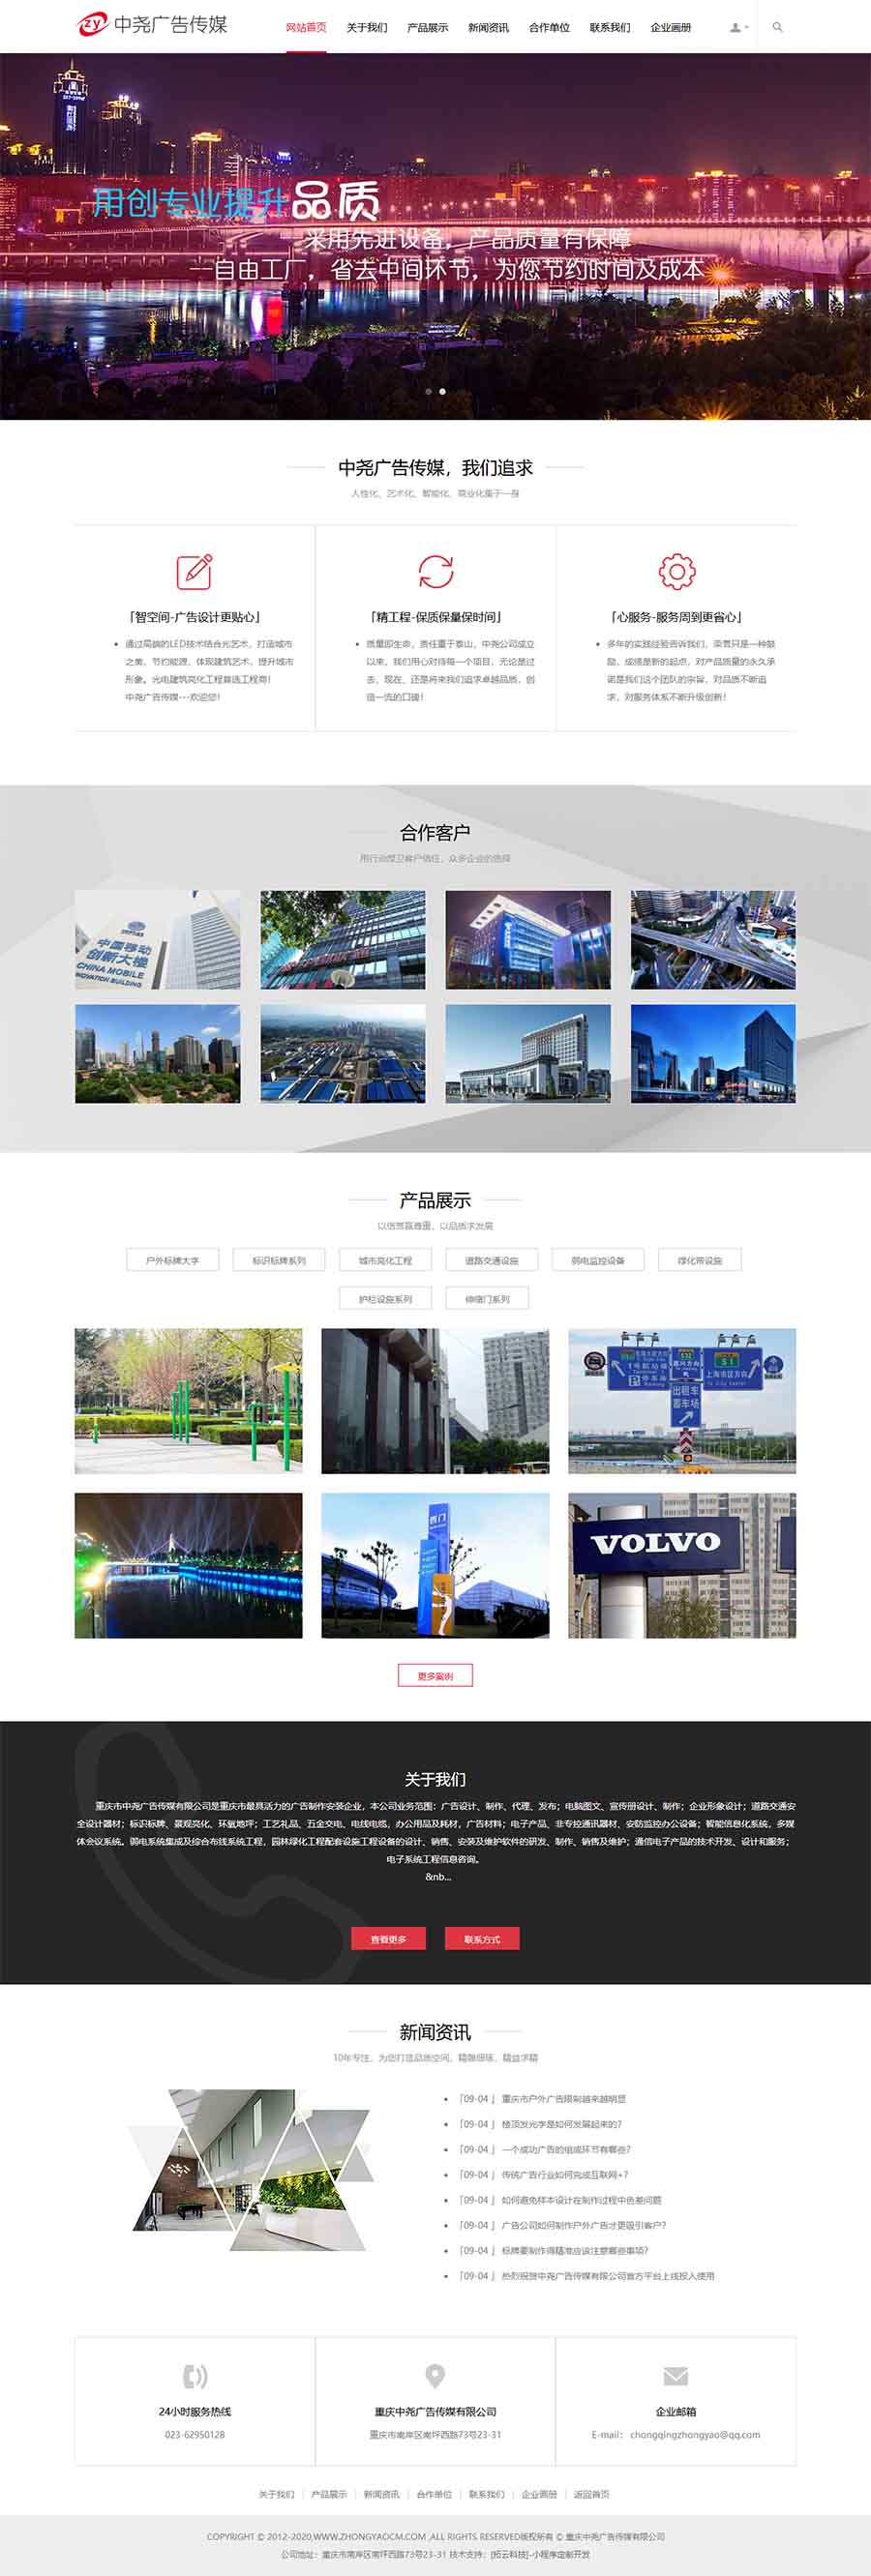 重庆市中尧广告传媒有限公司电脑网站